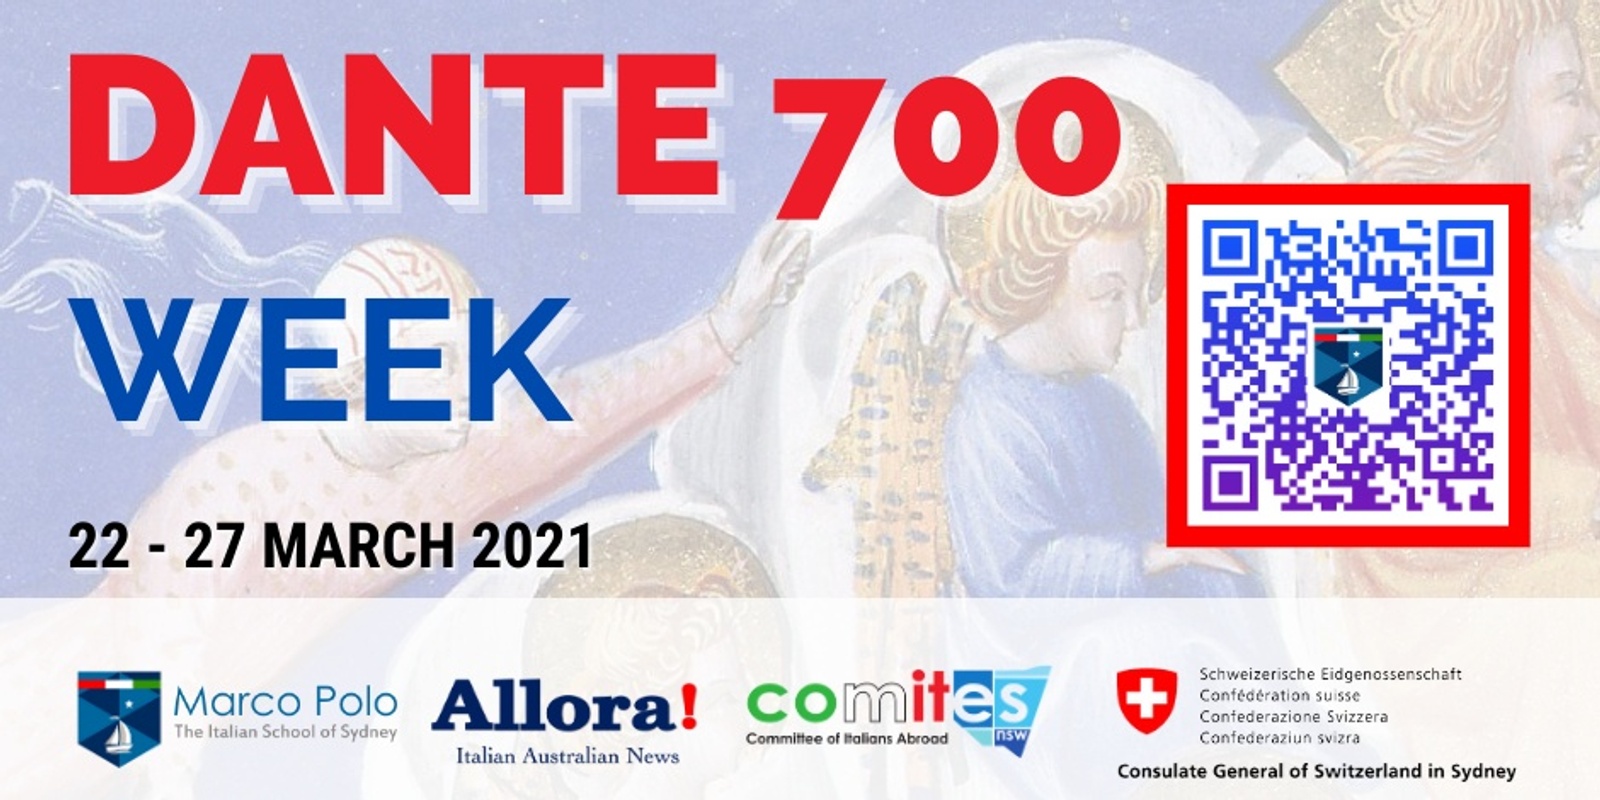 Banner image for Dante 700 Week in Sydney